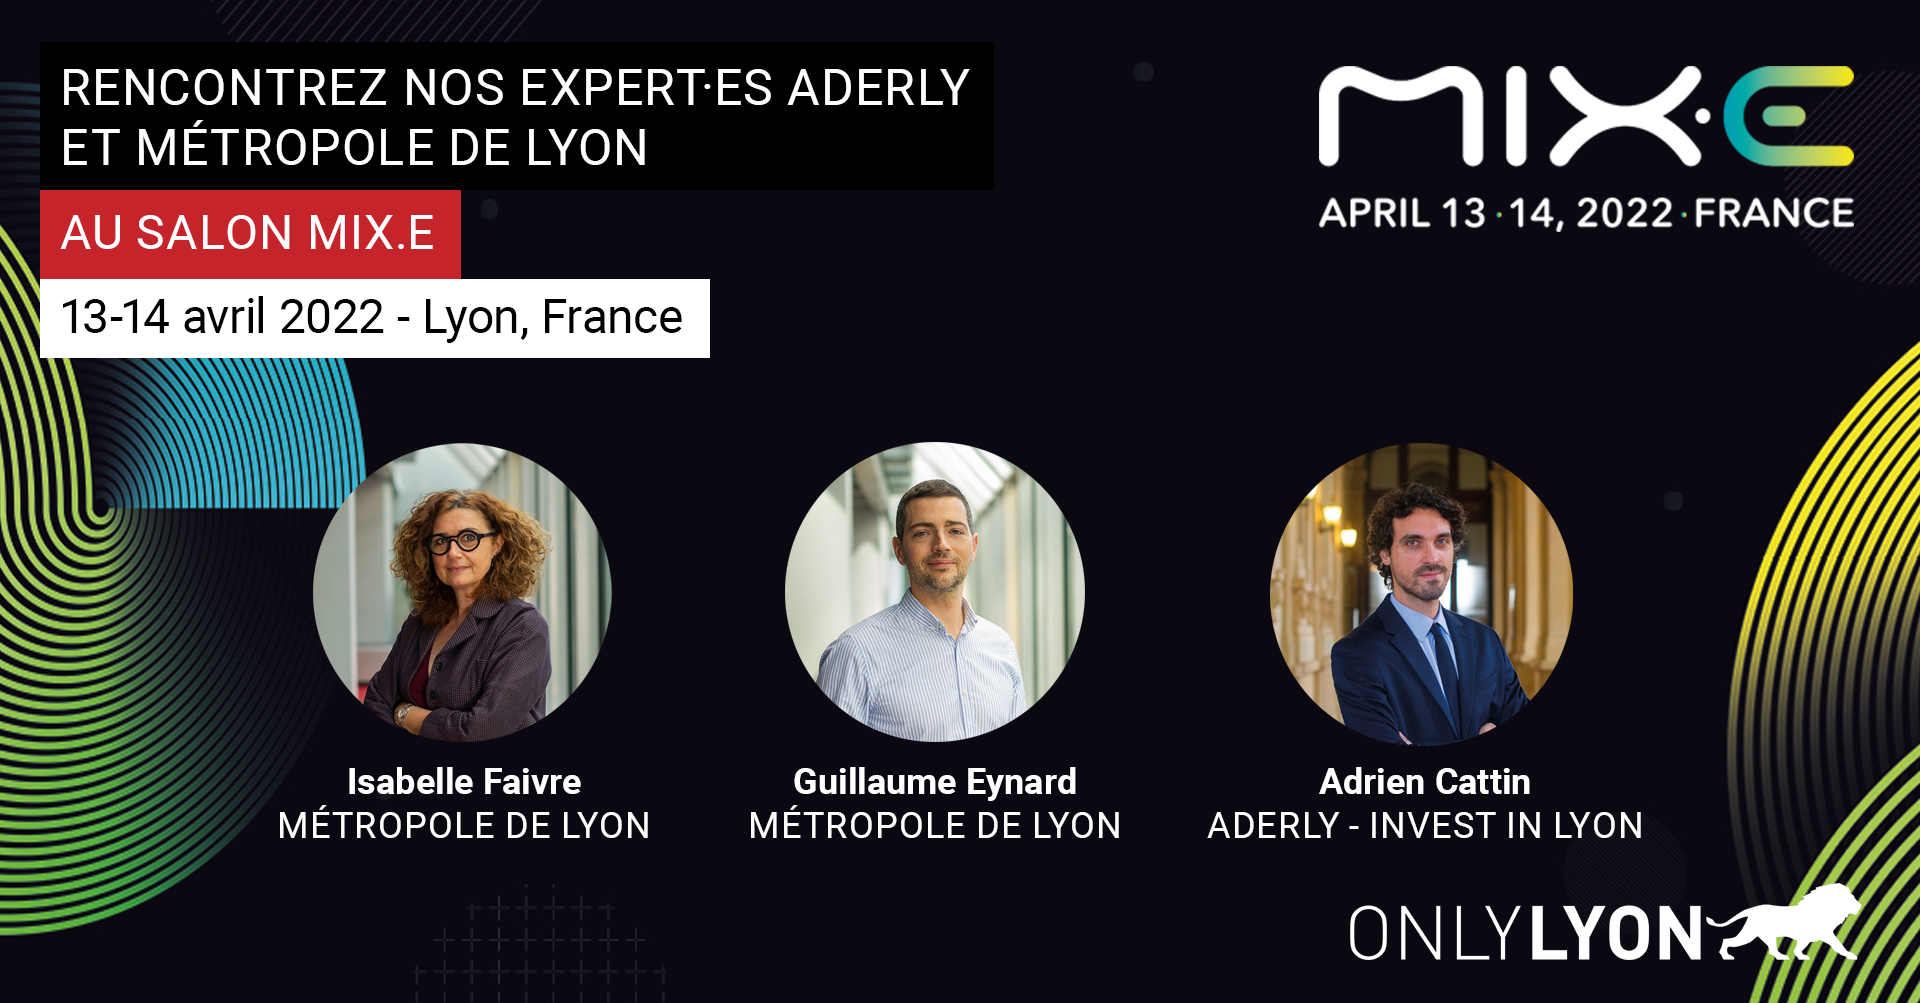 L'Aderly vient à votre rencontre au salon MIX.E les 13 et 14 avril 2022 à Lyon